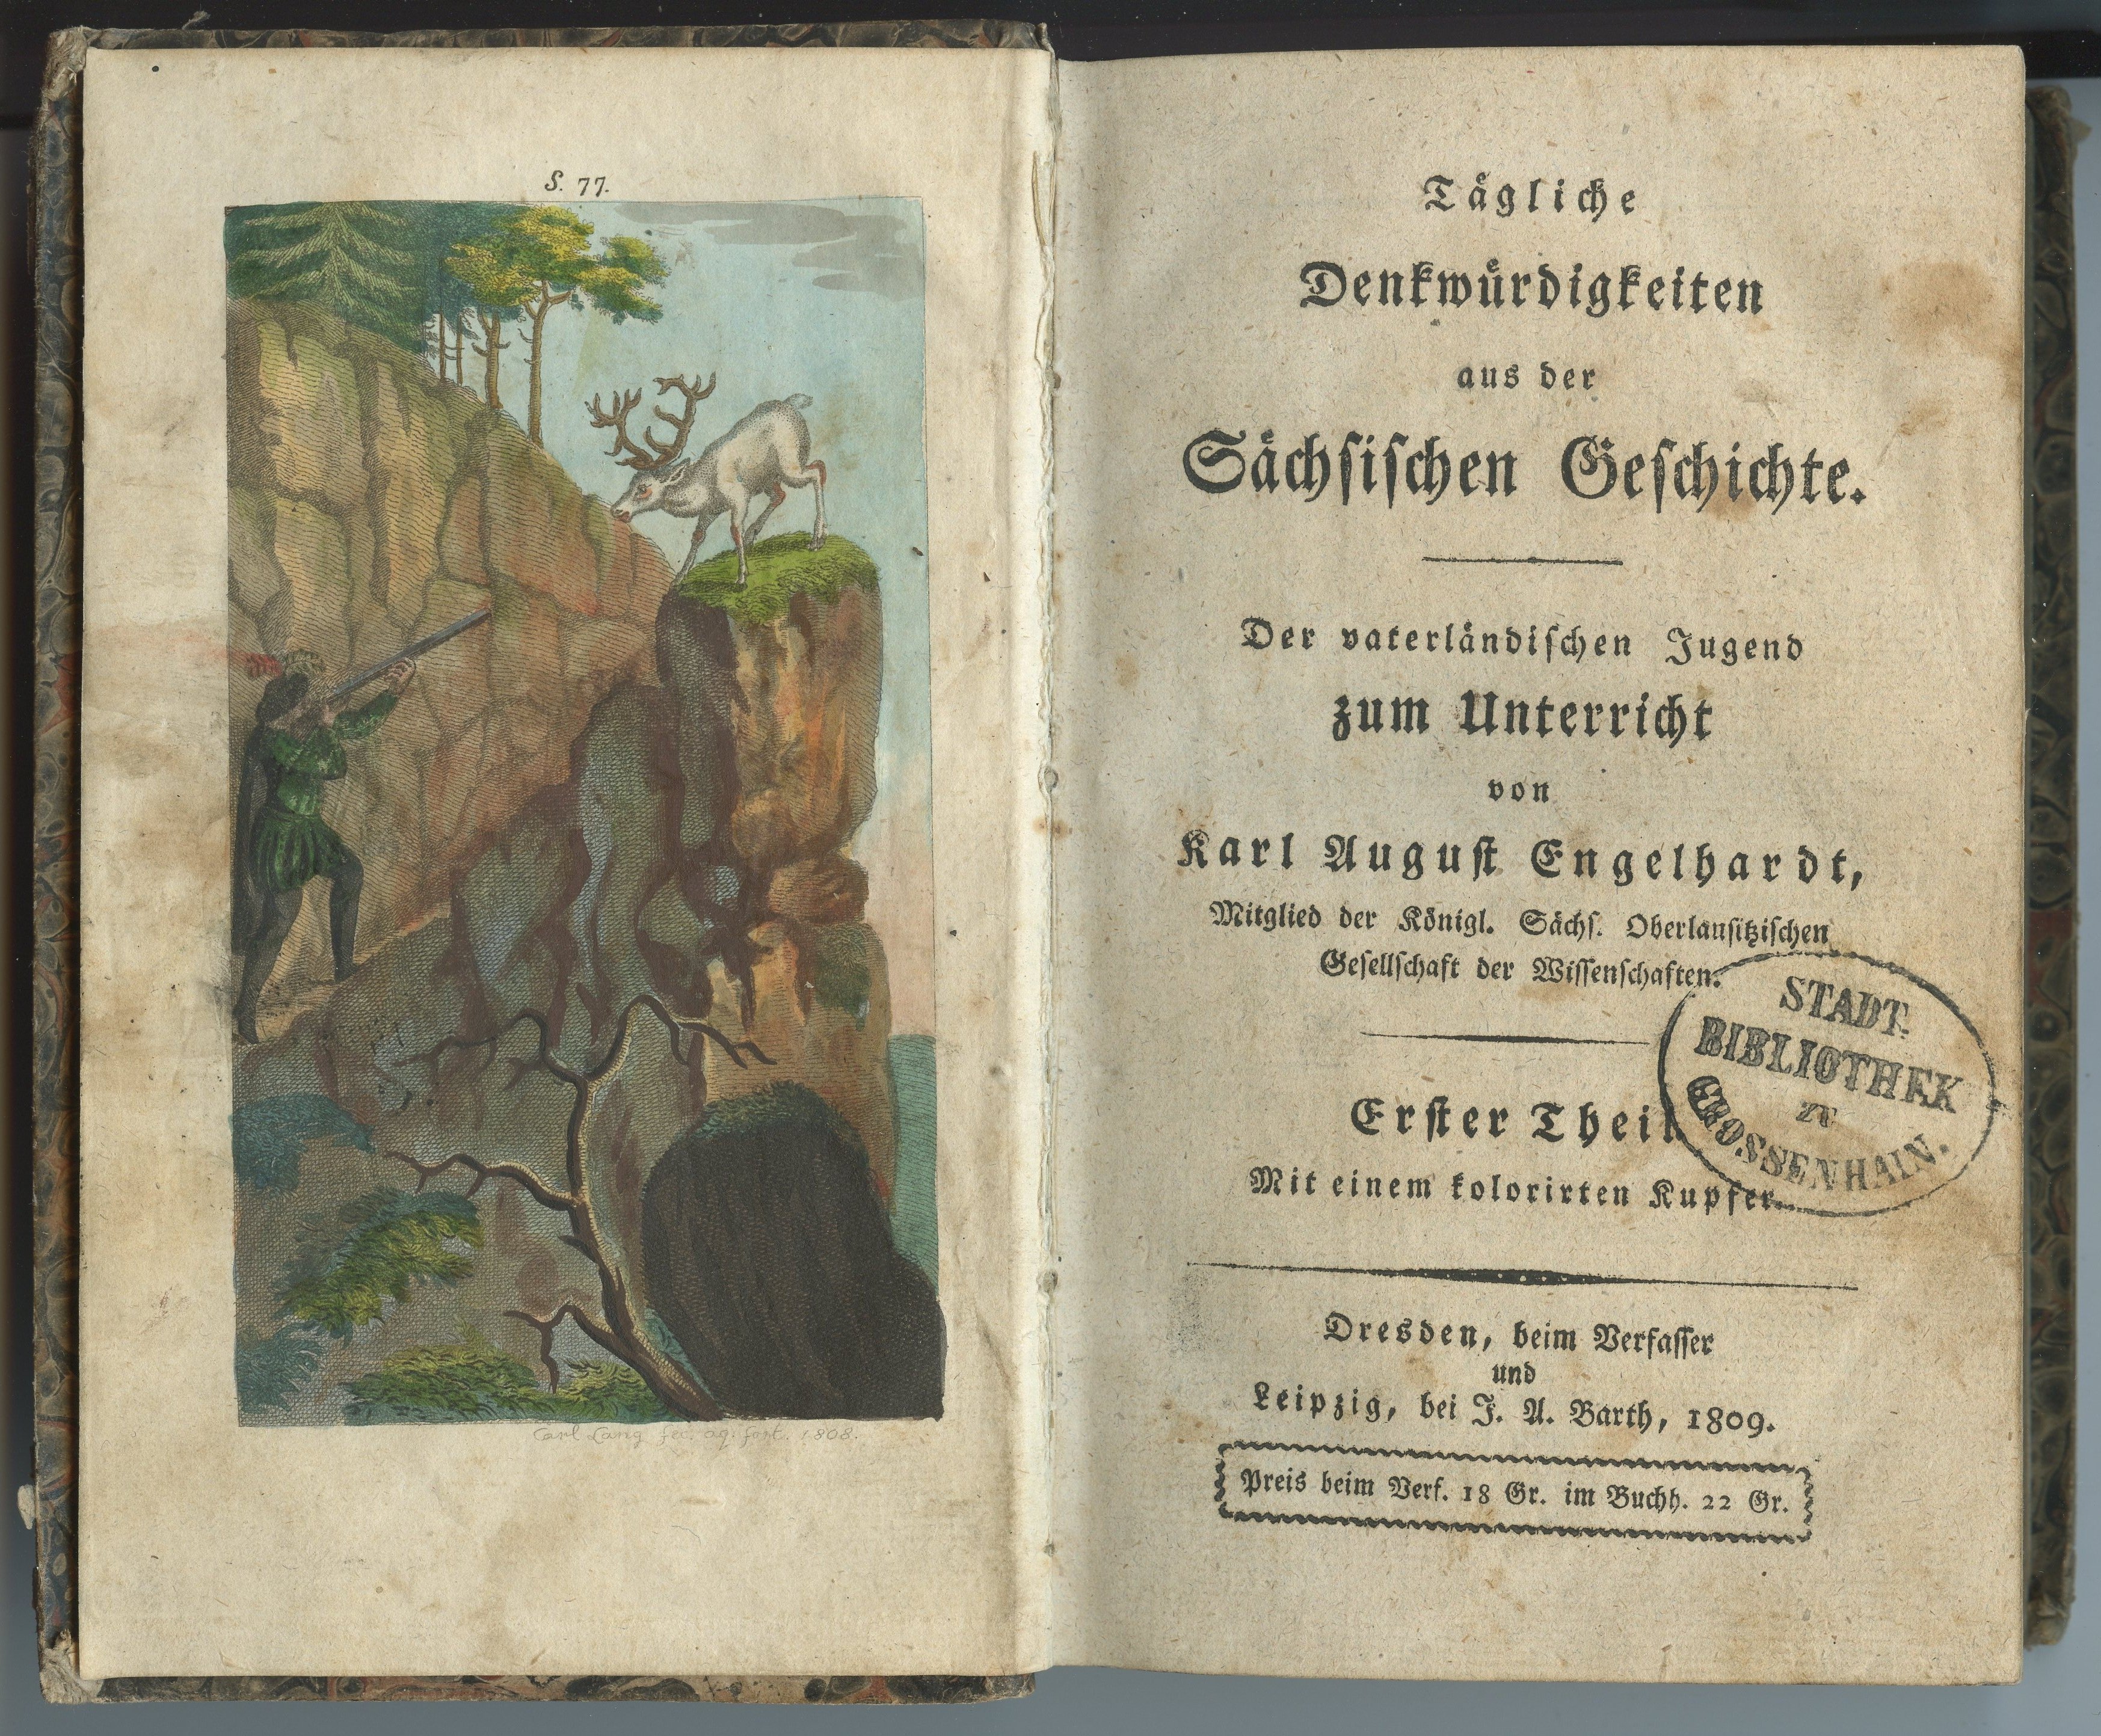 Engelhardt, Karl August: Tägliche Denkwürdigkeiten aus der Sächsischen Geschichte. 3 Bde., 1809-1812 (Museum Alte Lateinschule CC BY-NC-SA)